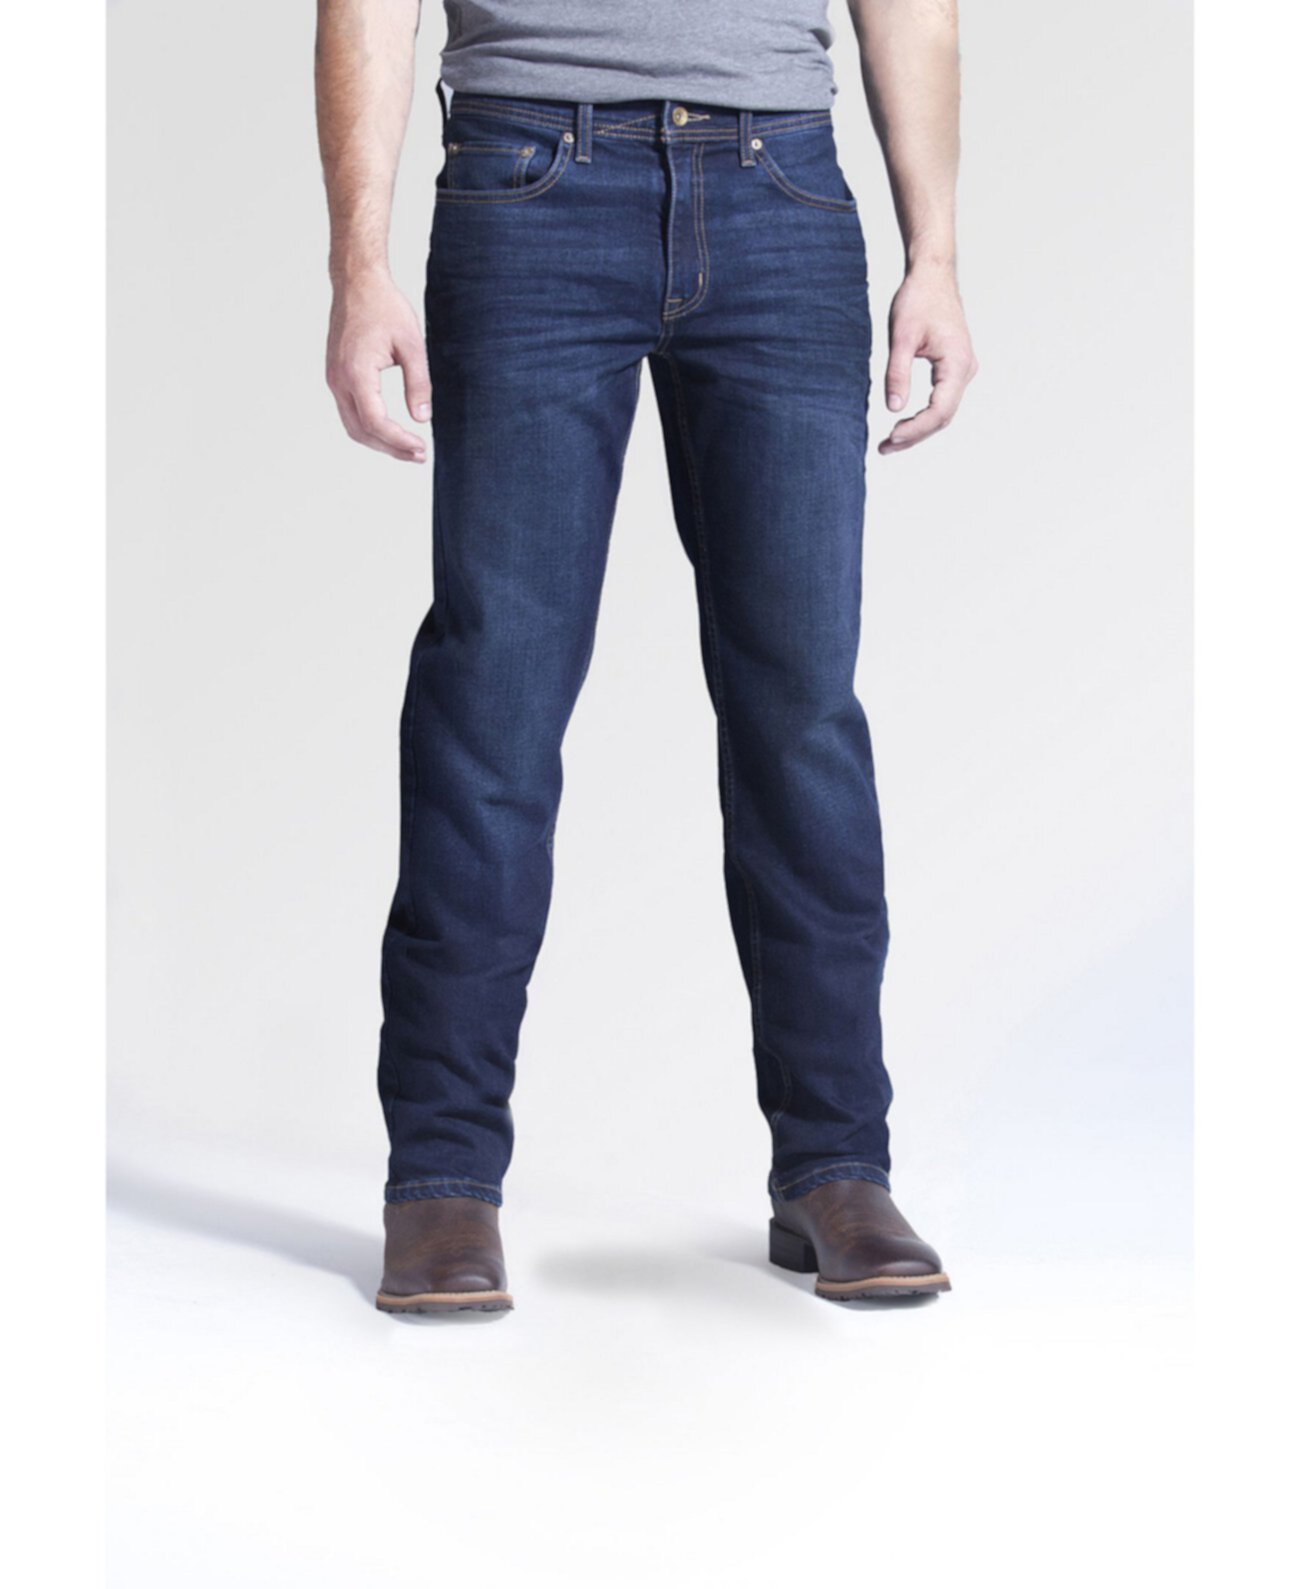 Мужские эластичные джинсовые джинсы-скинни Fit Boot Cut, Lincoln Wash Devil-Dog Dungarees